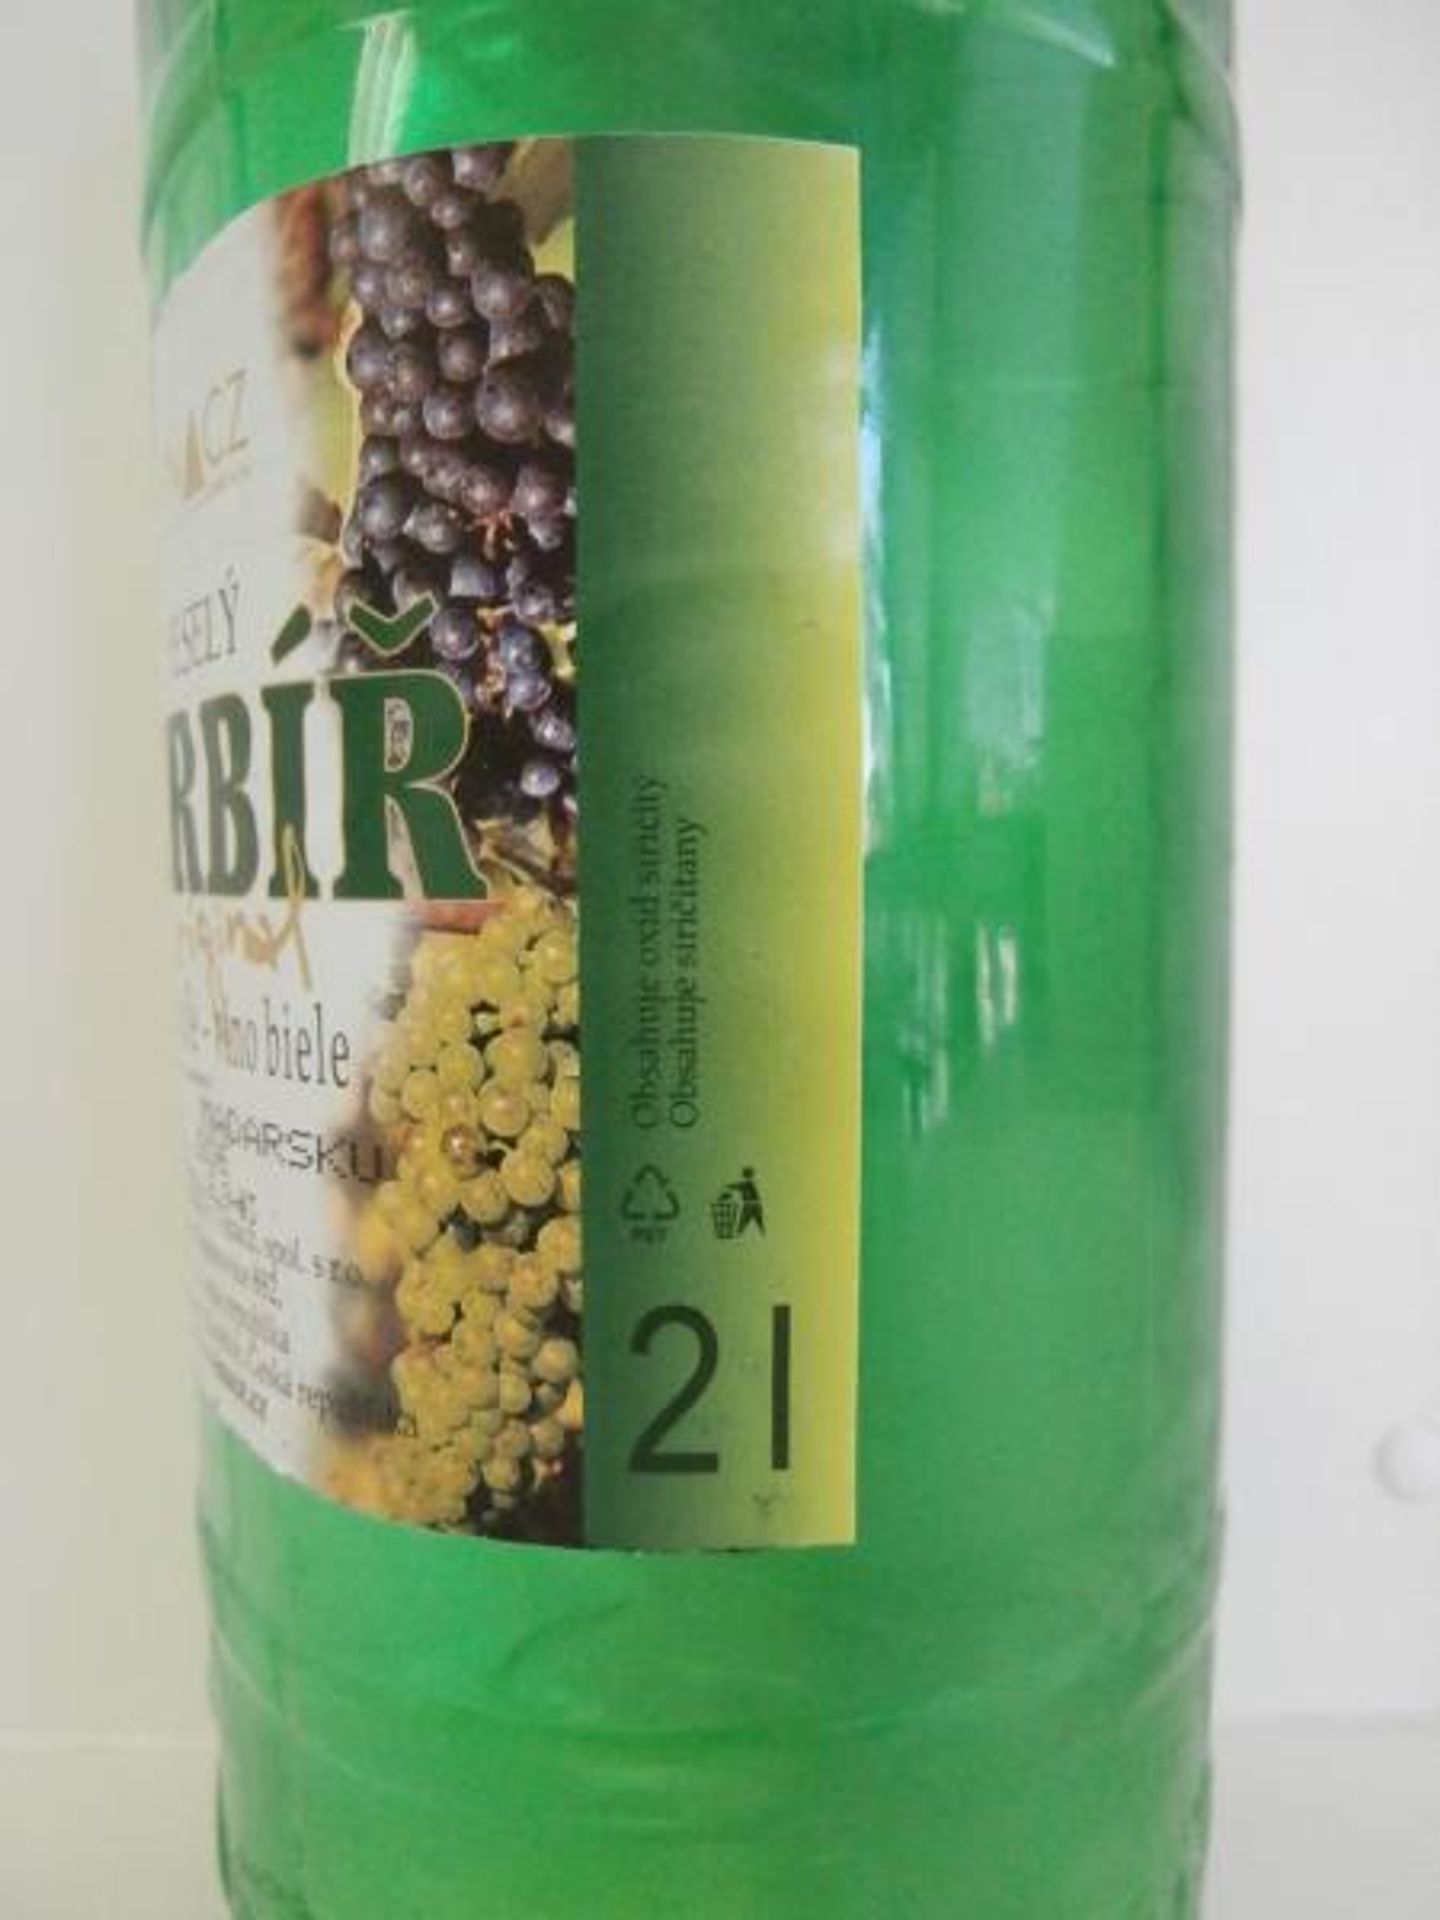 Vinacz: Veselý verbíř - 4 - GALERIE: Vinacz - Veselý verbíř - víno bílé, suché (4/4)